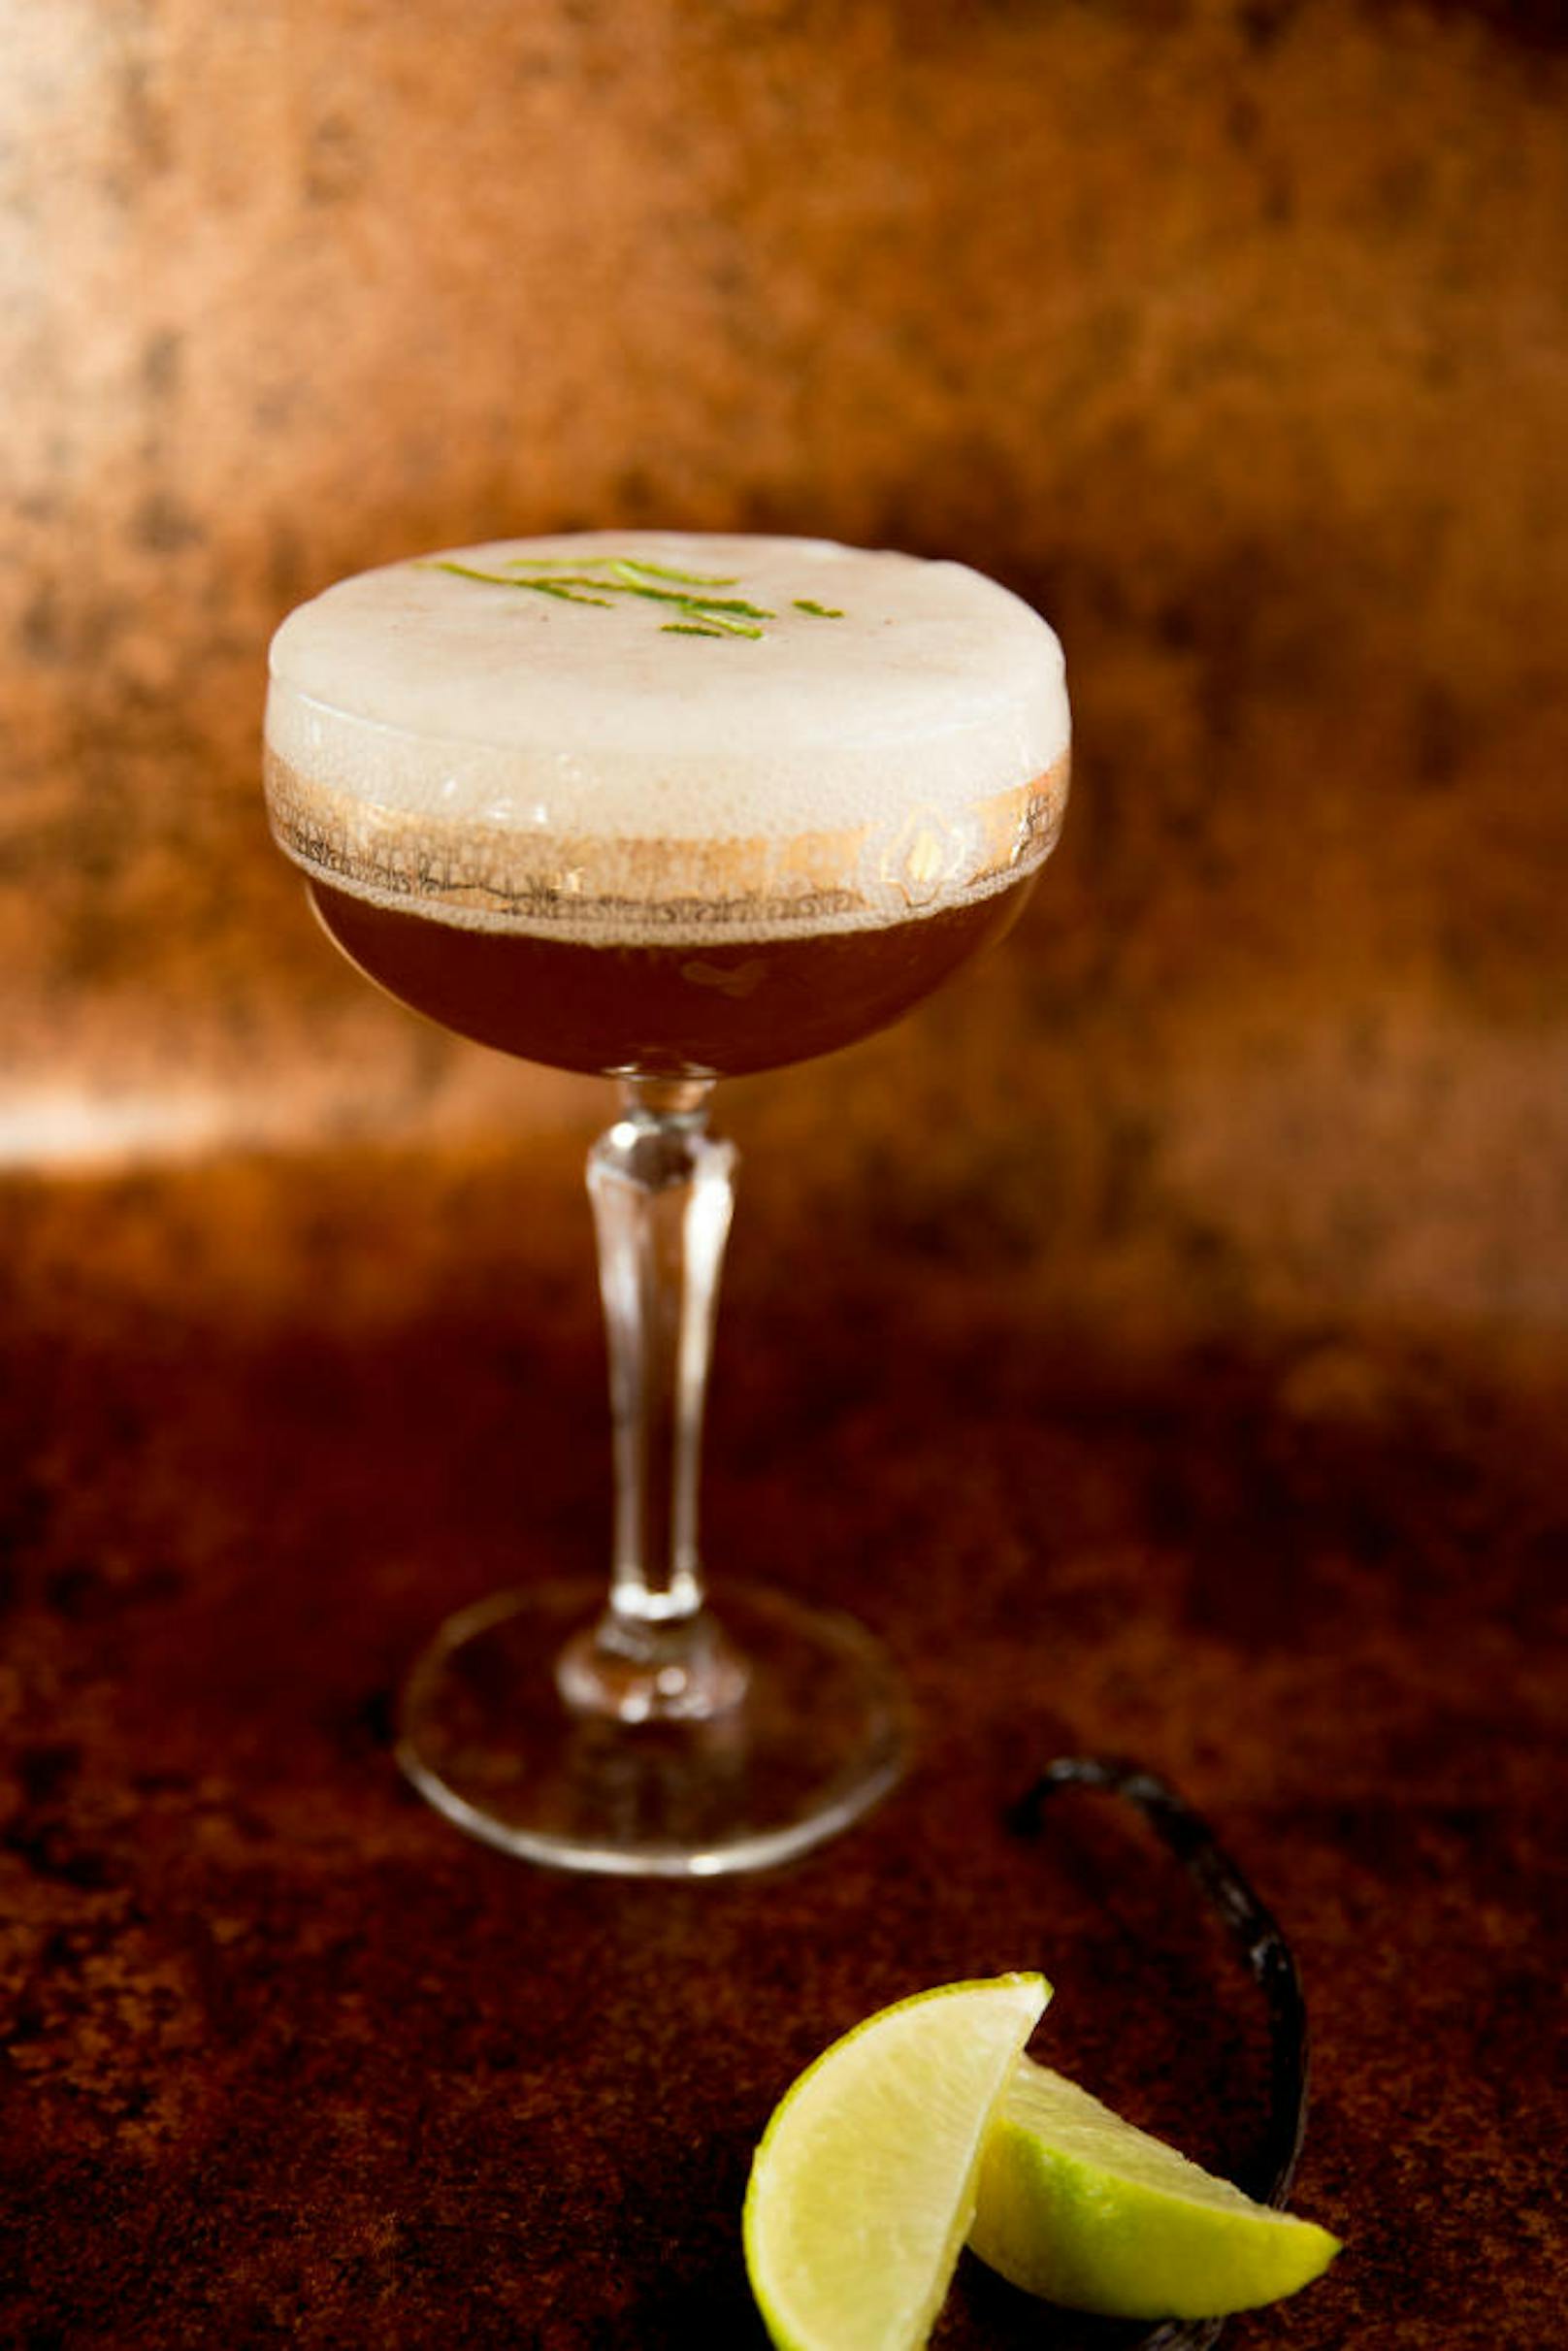 Die Beispiele dafür: 
"Double Dee": Havana Club Añejo Especial Rum, dunkler Rohrzuckersirup, Limetten-Vanille Espuma